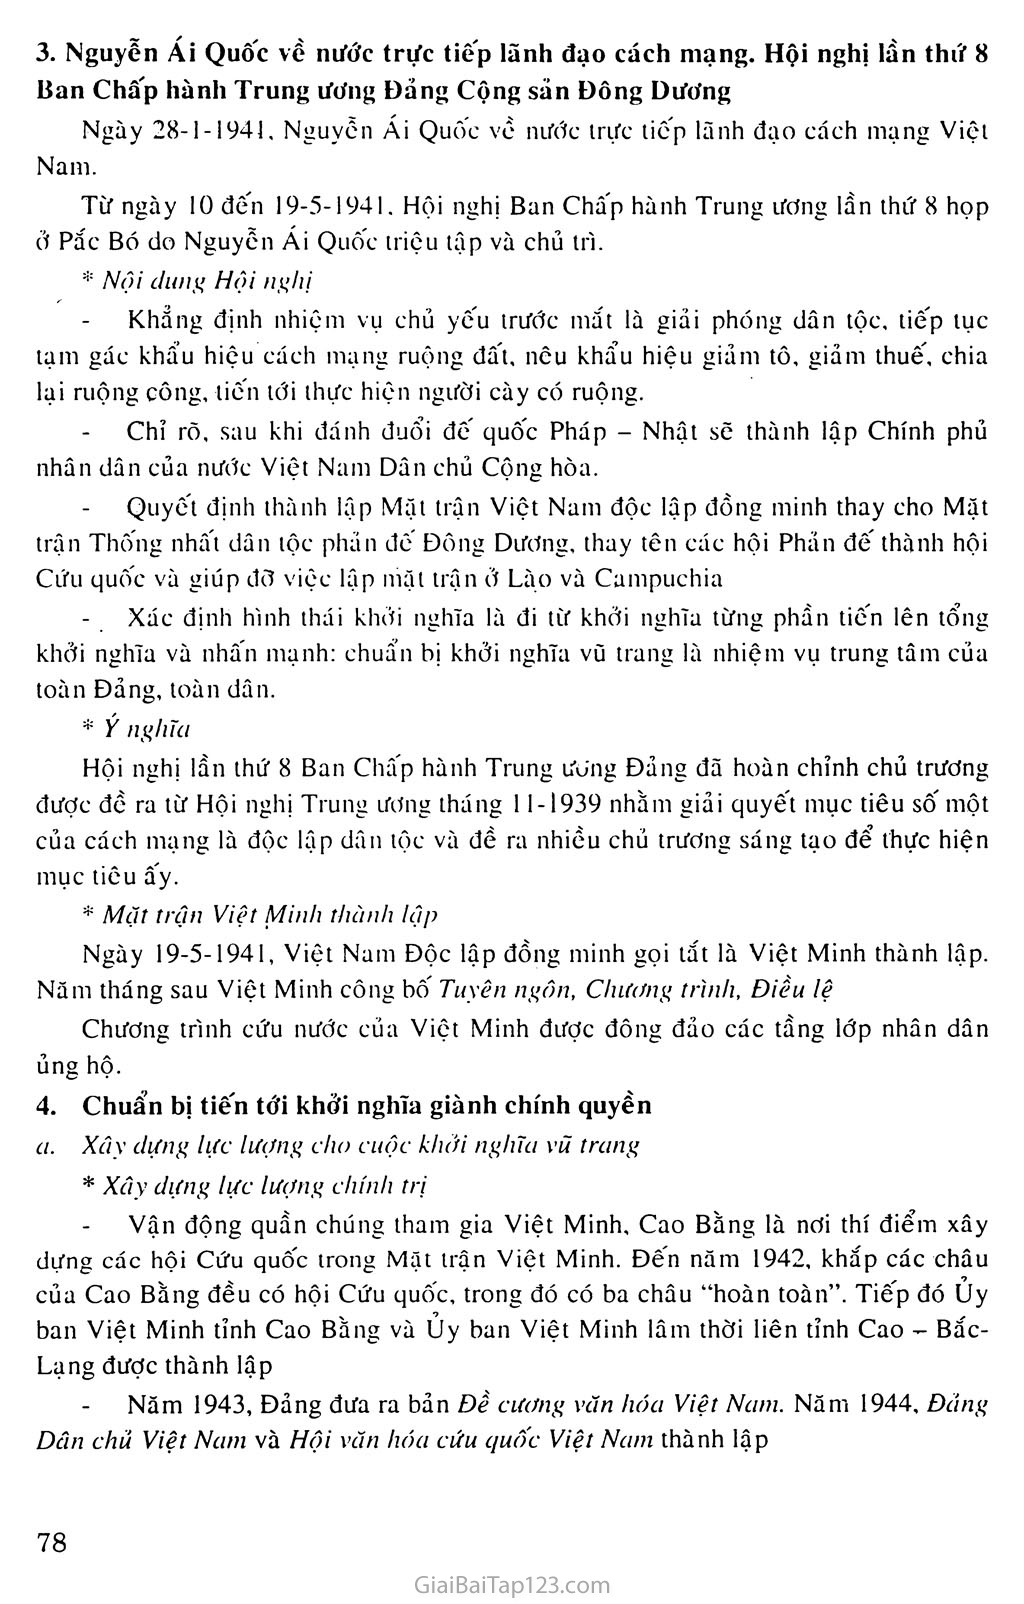 Bài 16: Phong trào giải phóng dân tộc và Tổng khởi nghĩa tháng Tám (1939 - 1945). Nước Việt Nam Dân chủ Cộng hòa ra đời trang 4